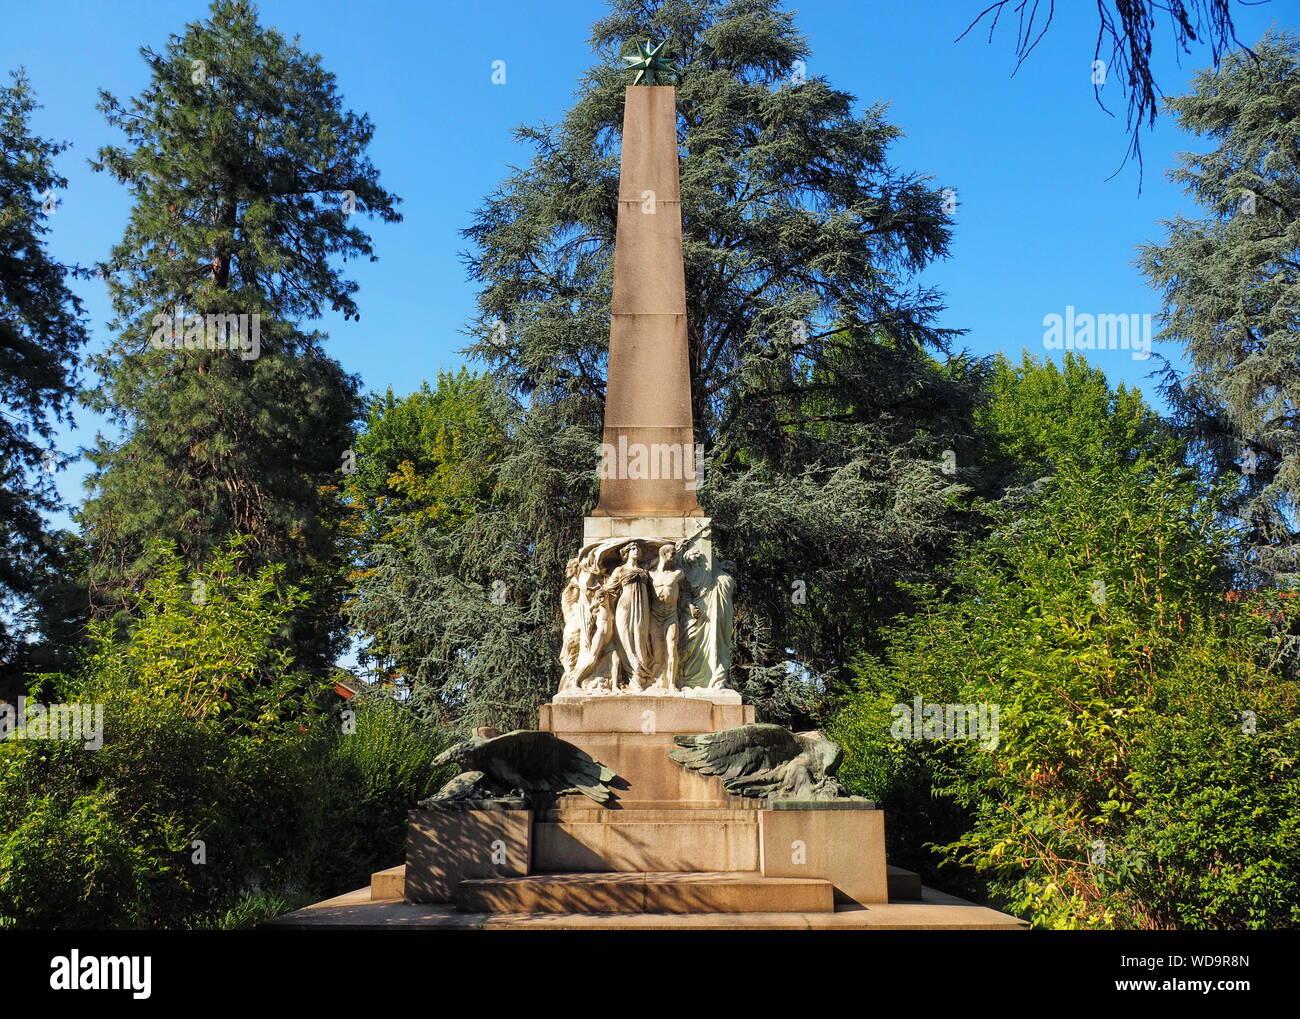 Obelisk in Sant'Eusebio square, Vercelli, Piedmont, Italy Stock Photo